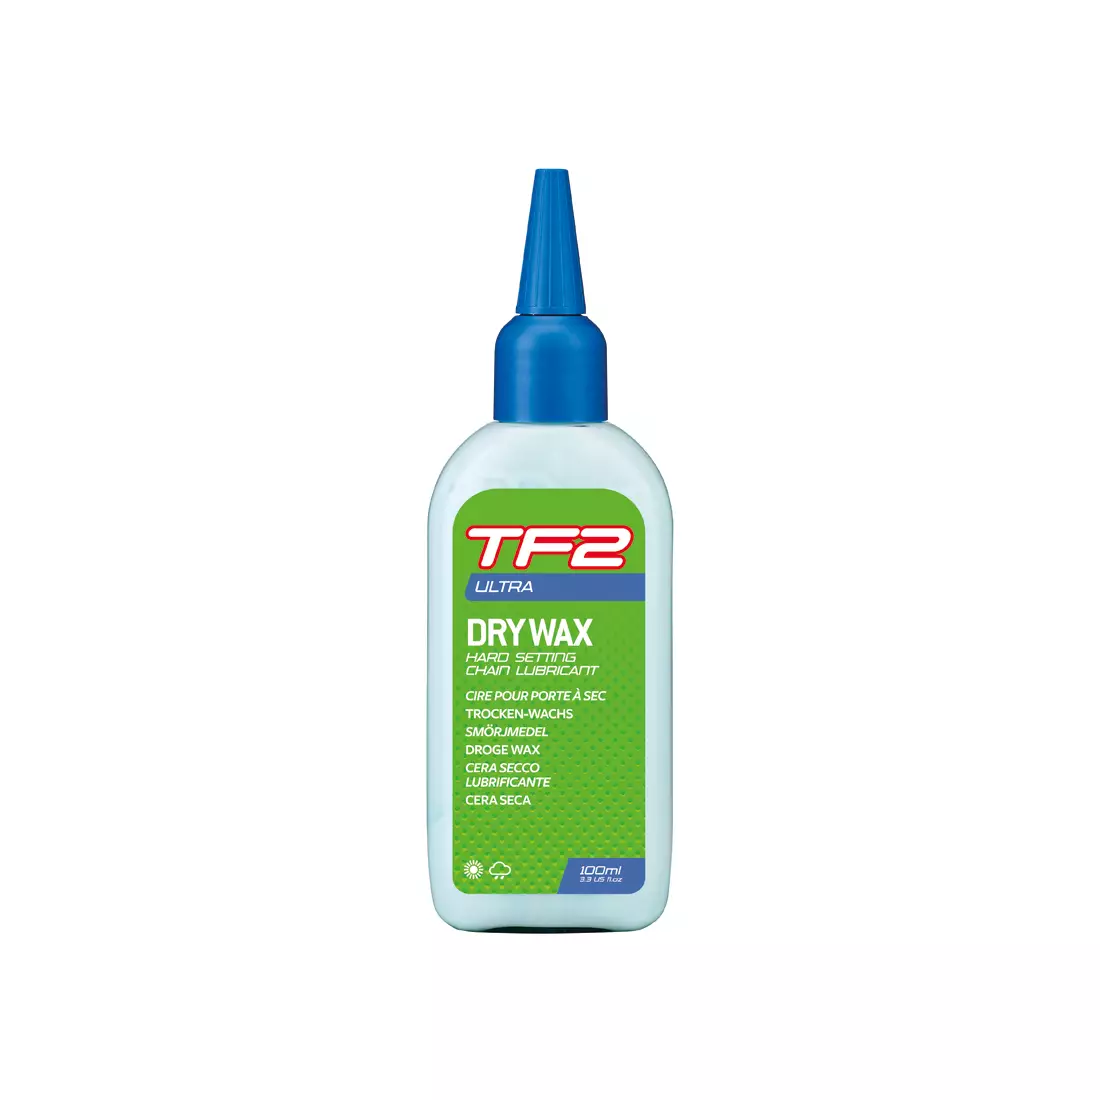 WELDTITE teflonový olej na řetězy tf2 dry wax (suché podmínky) 100ml WLD-3056